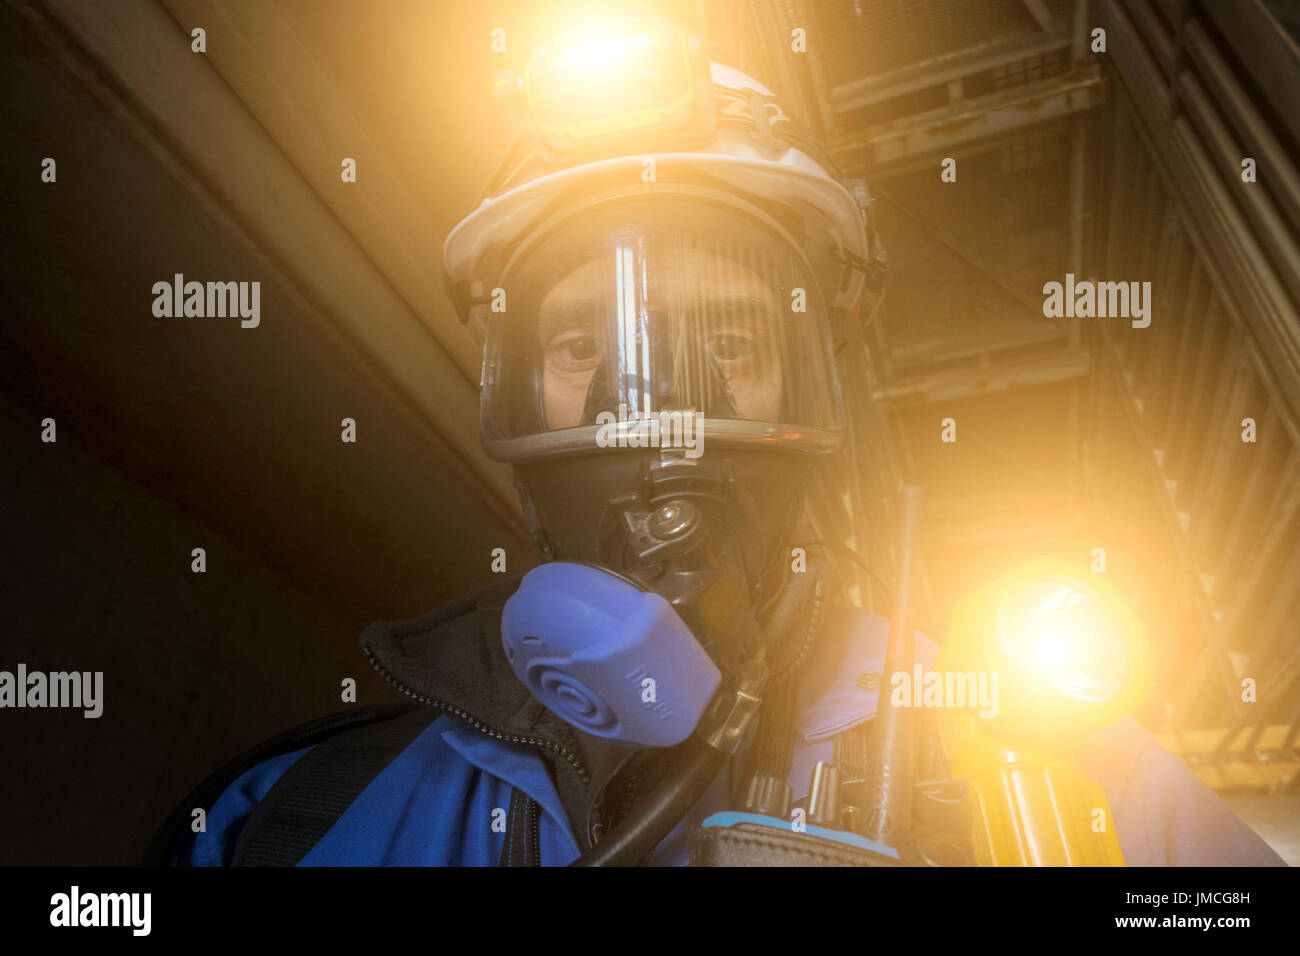 Une image stylisée d'un gaz et pétrole de la mer du Nord, travailleur portant des appareils respiratoires ba complète. crédit : lee ramsden / alamy Banque D'Images